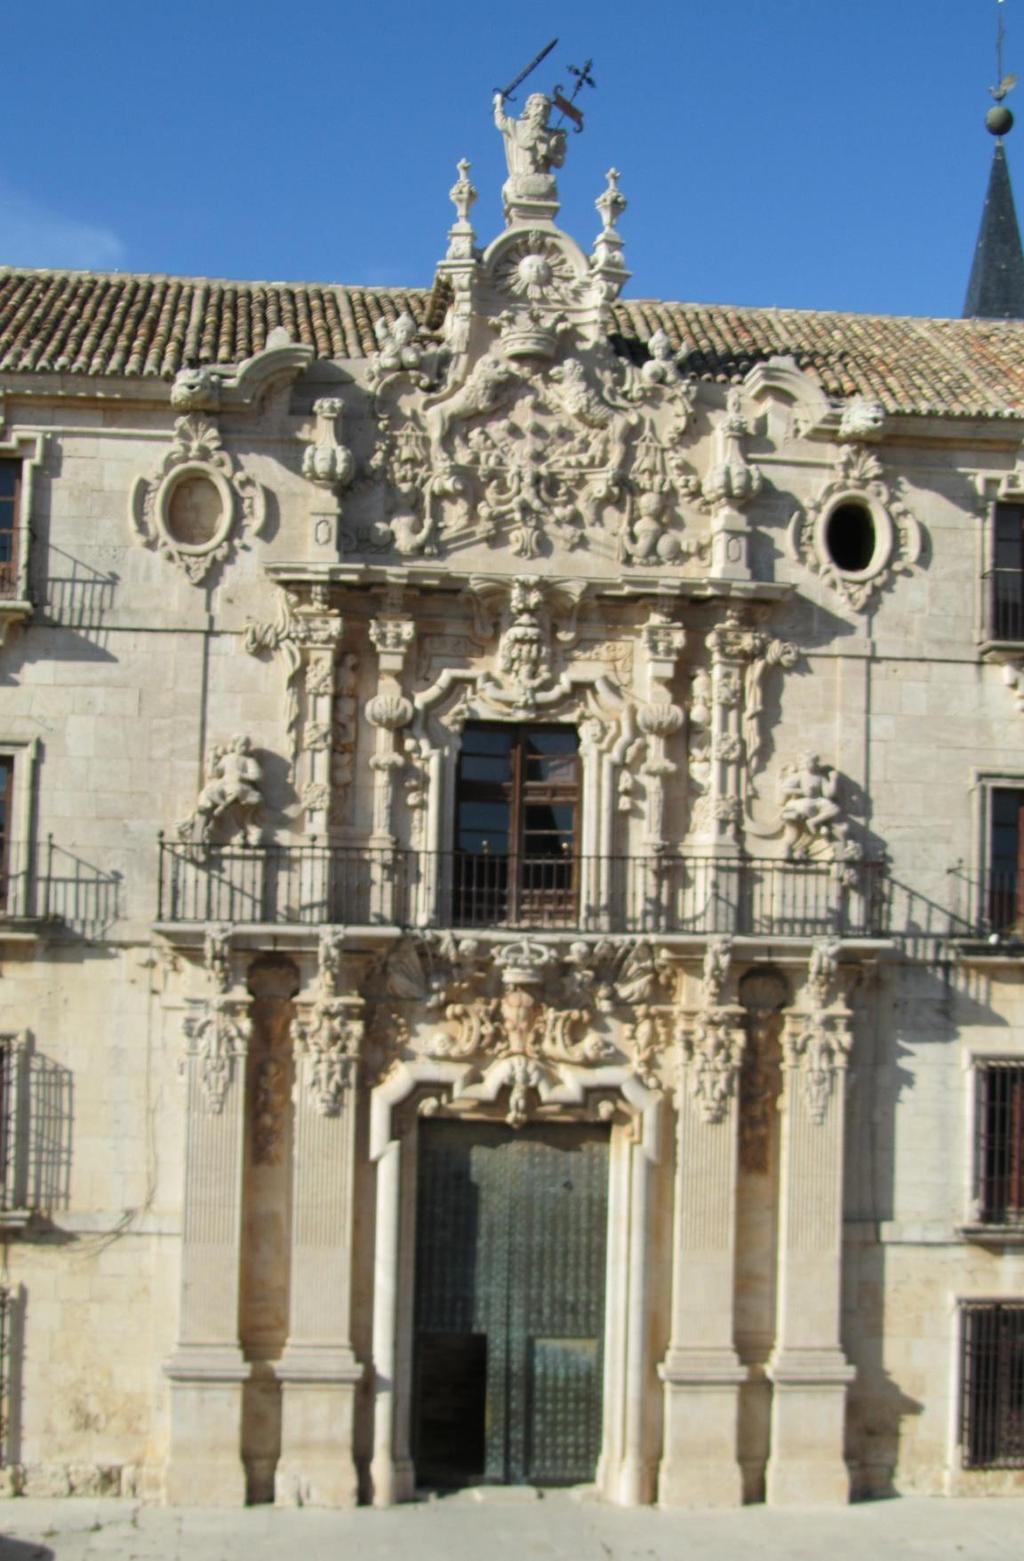 La fachada principal o del mediodía fue construida en 1735 por Pedro de Ribera en estilo churrigueresco. En la portada aparecen cuatro pilastras que actúan como elementos decorativos.